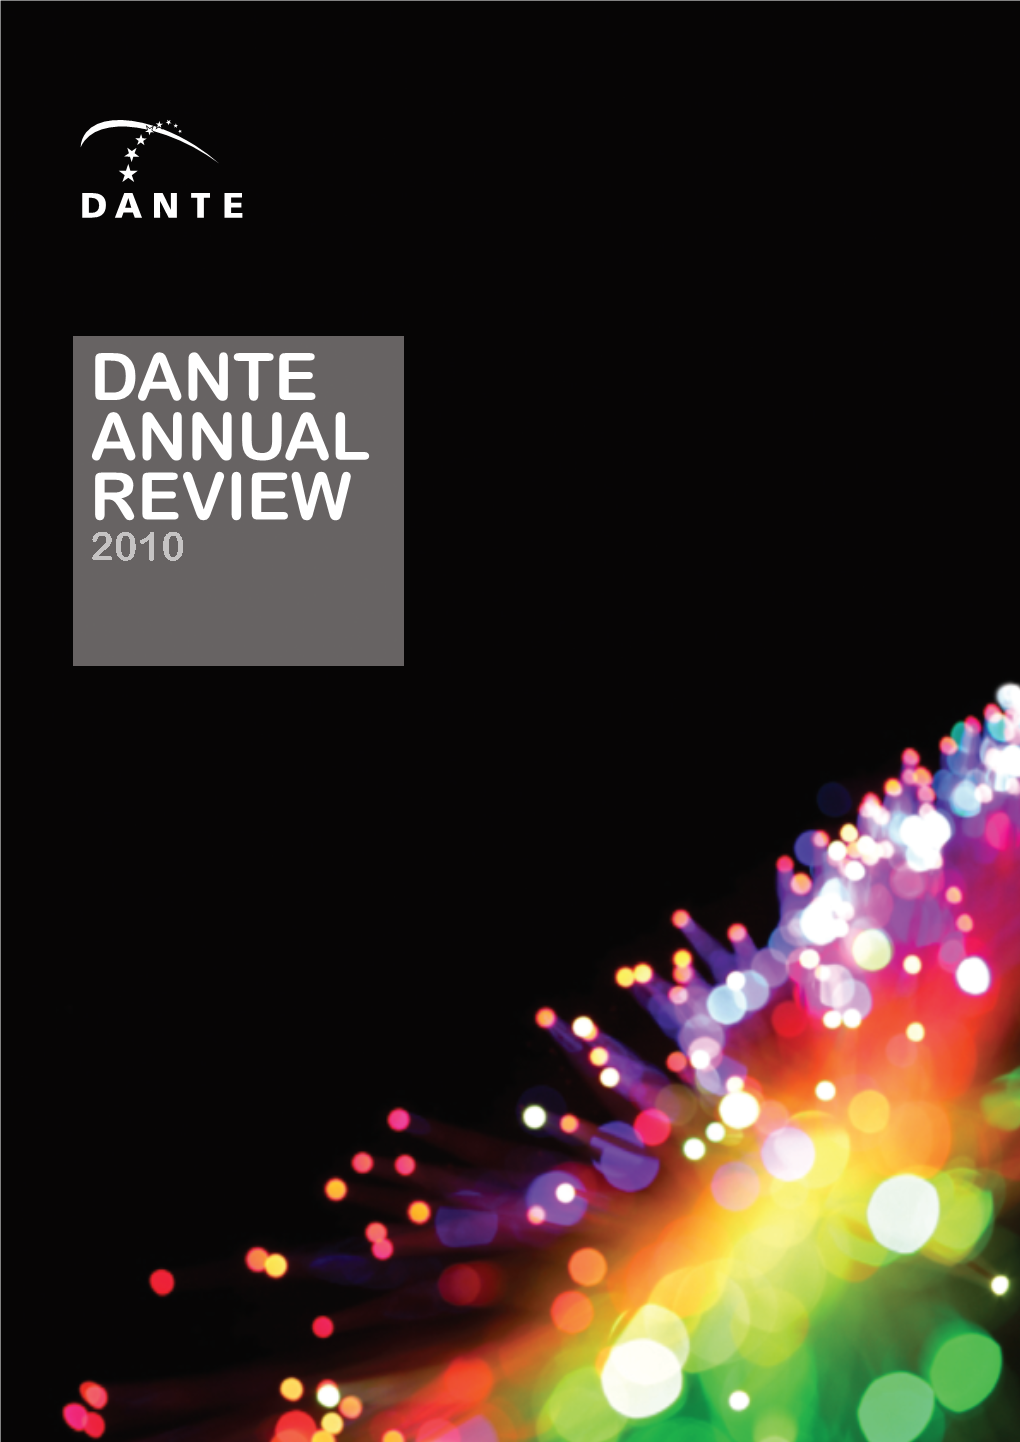 2010 DANTE Annual Review